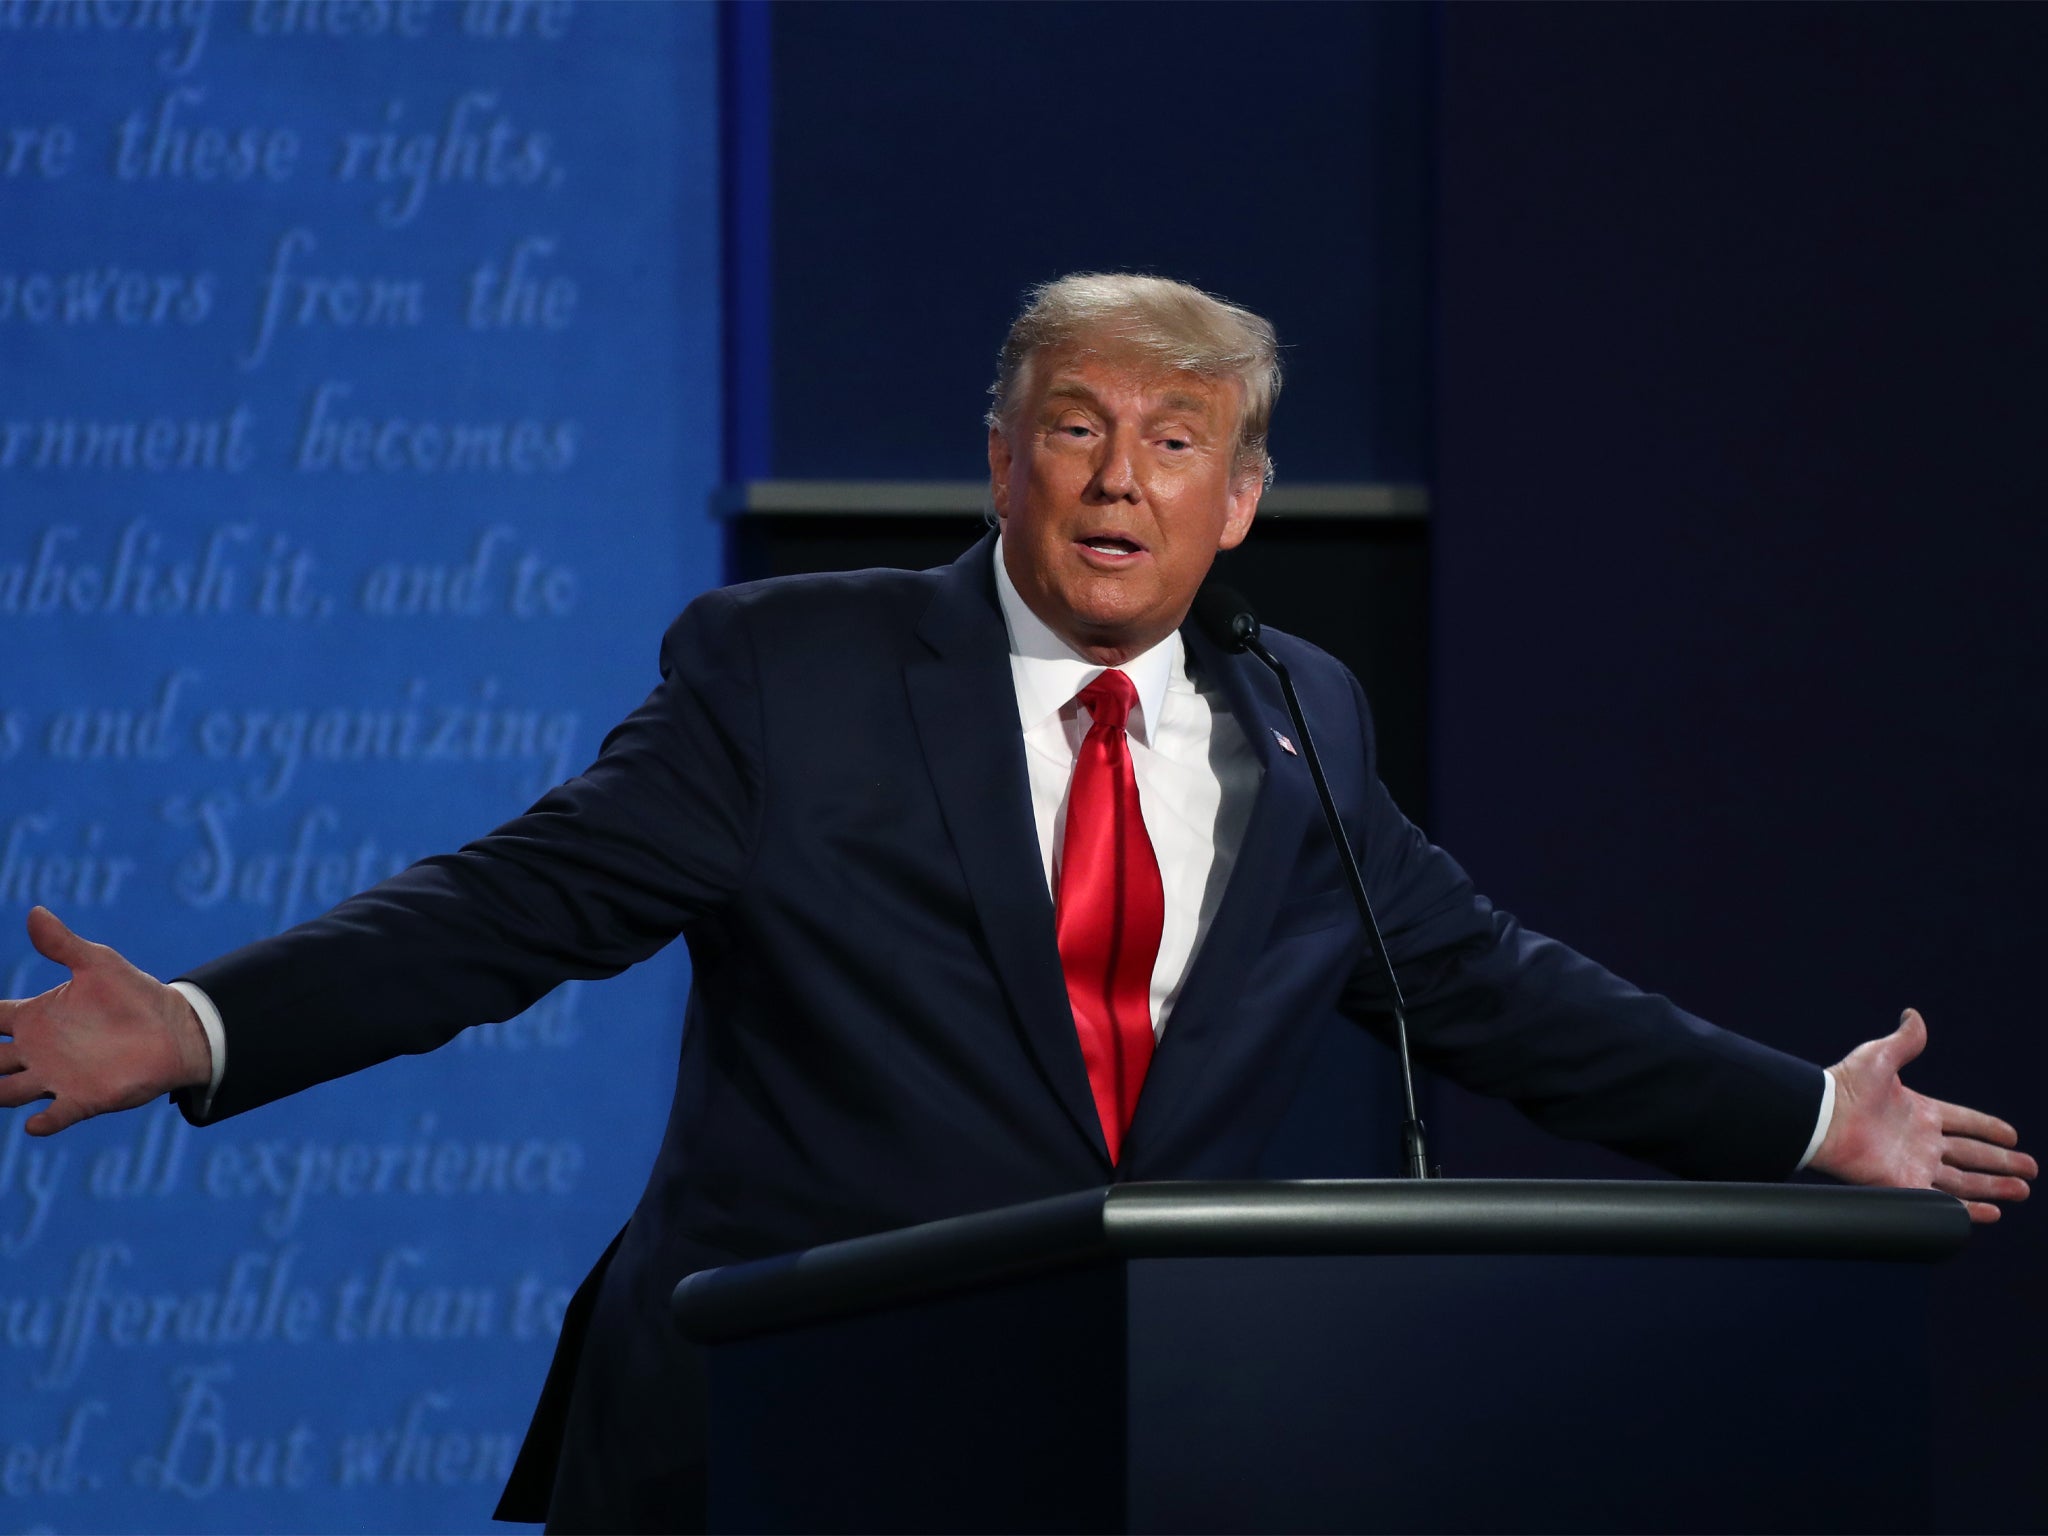 Trump asegura que debatir de manera serena parece ser más popular entre la población